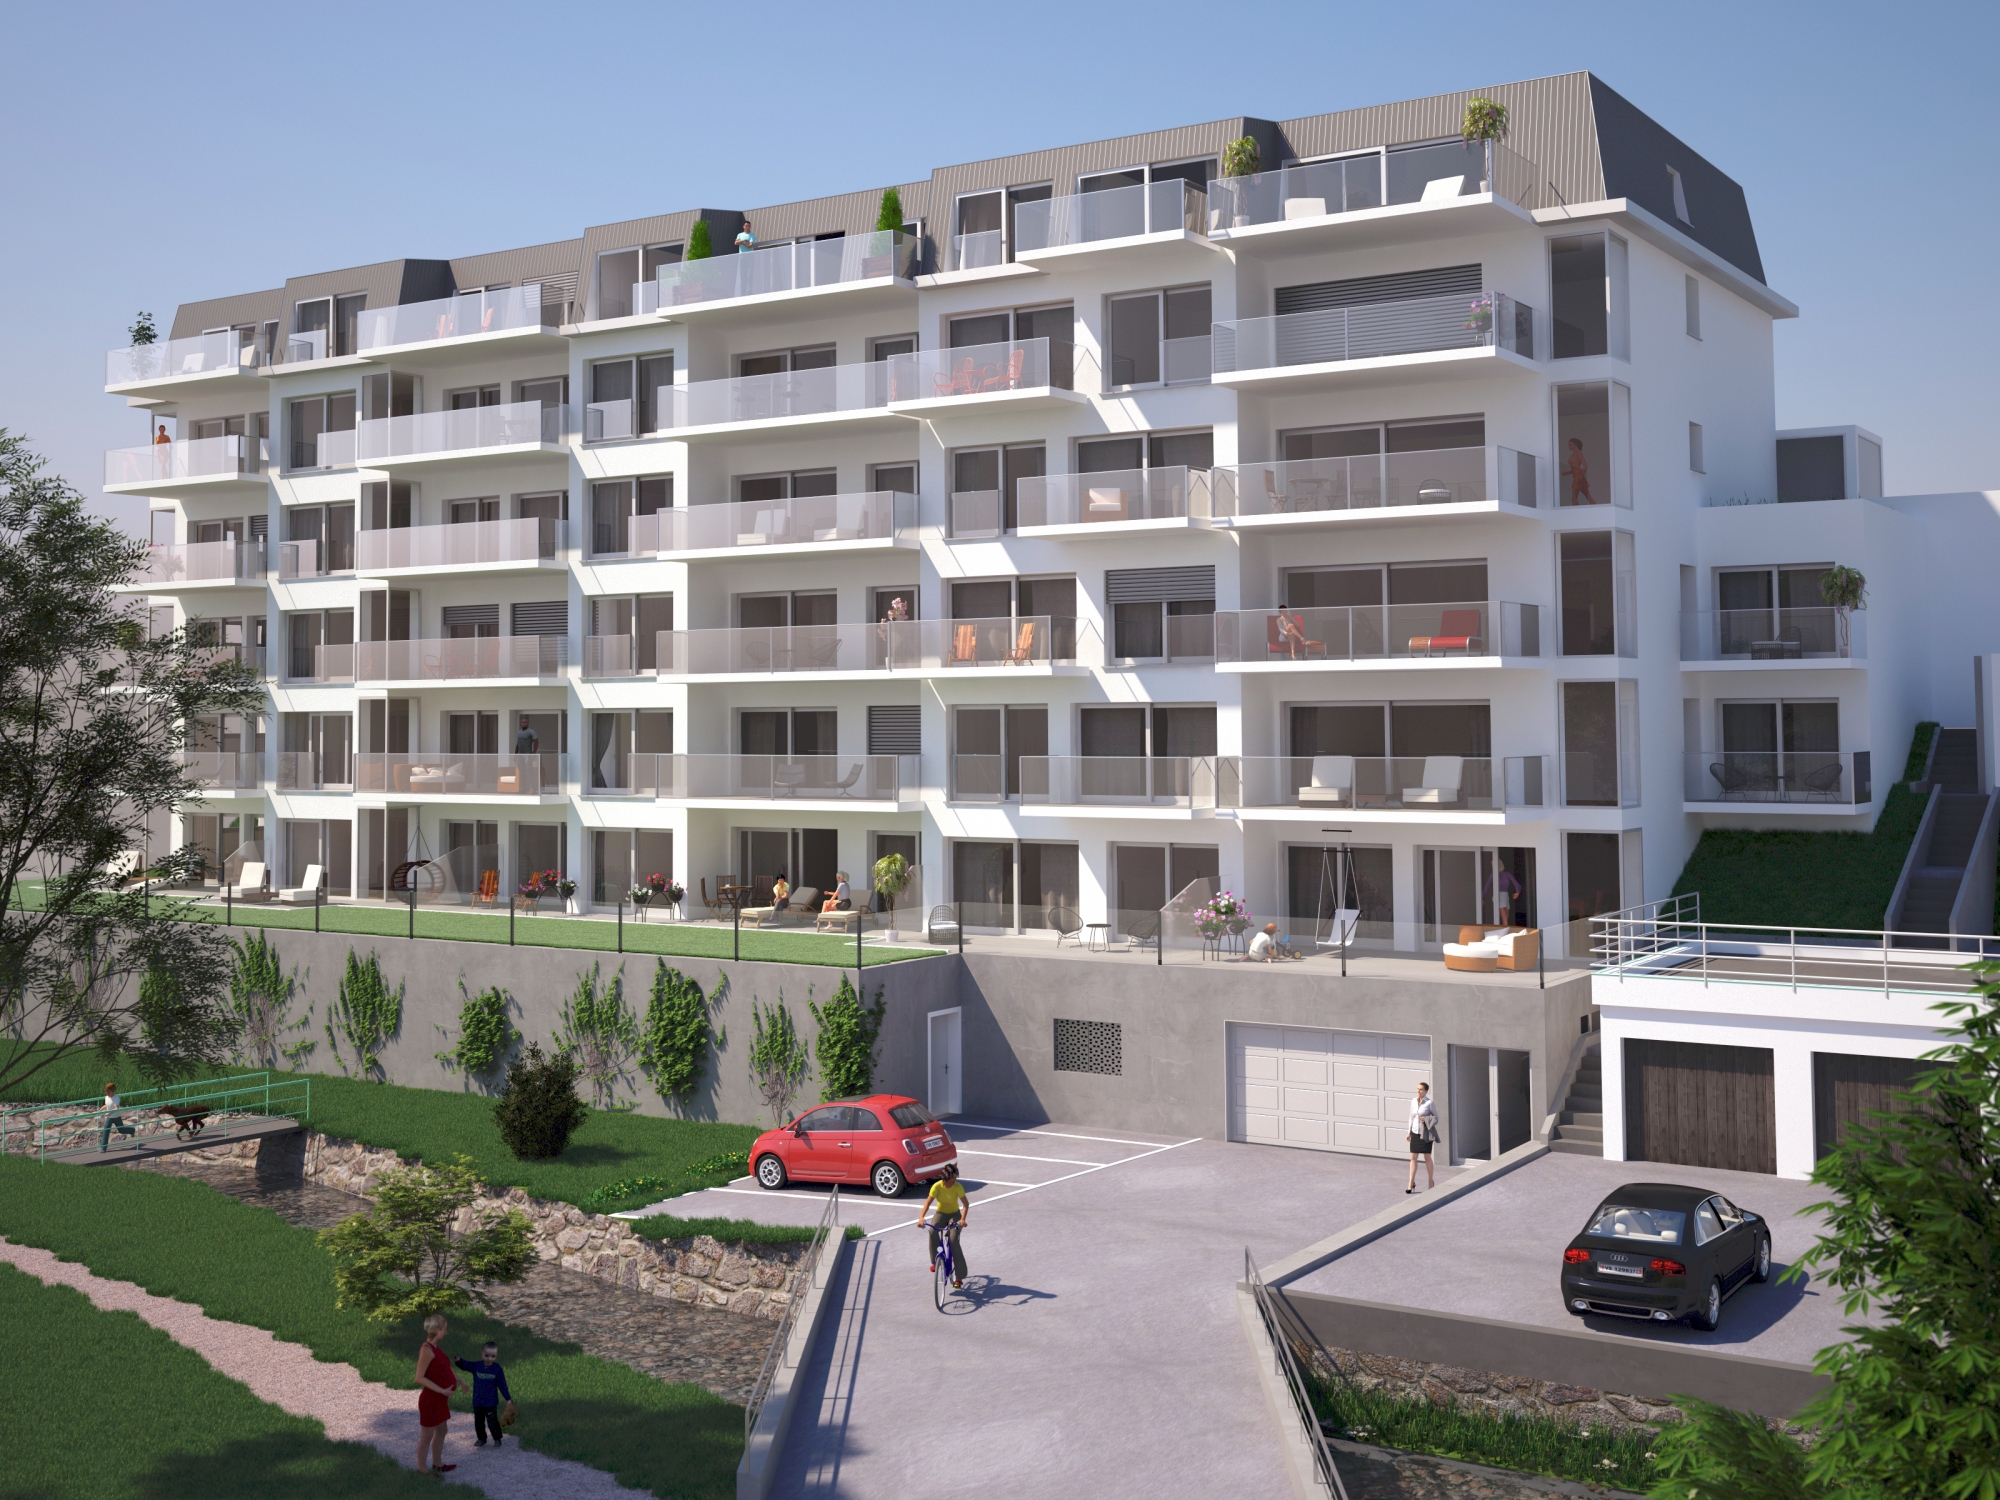 Le groupe BOAS va construire 32 appartements au Bouveret d'ici à l'été 2021.